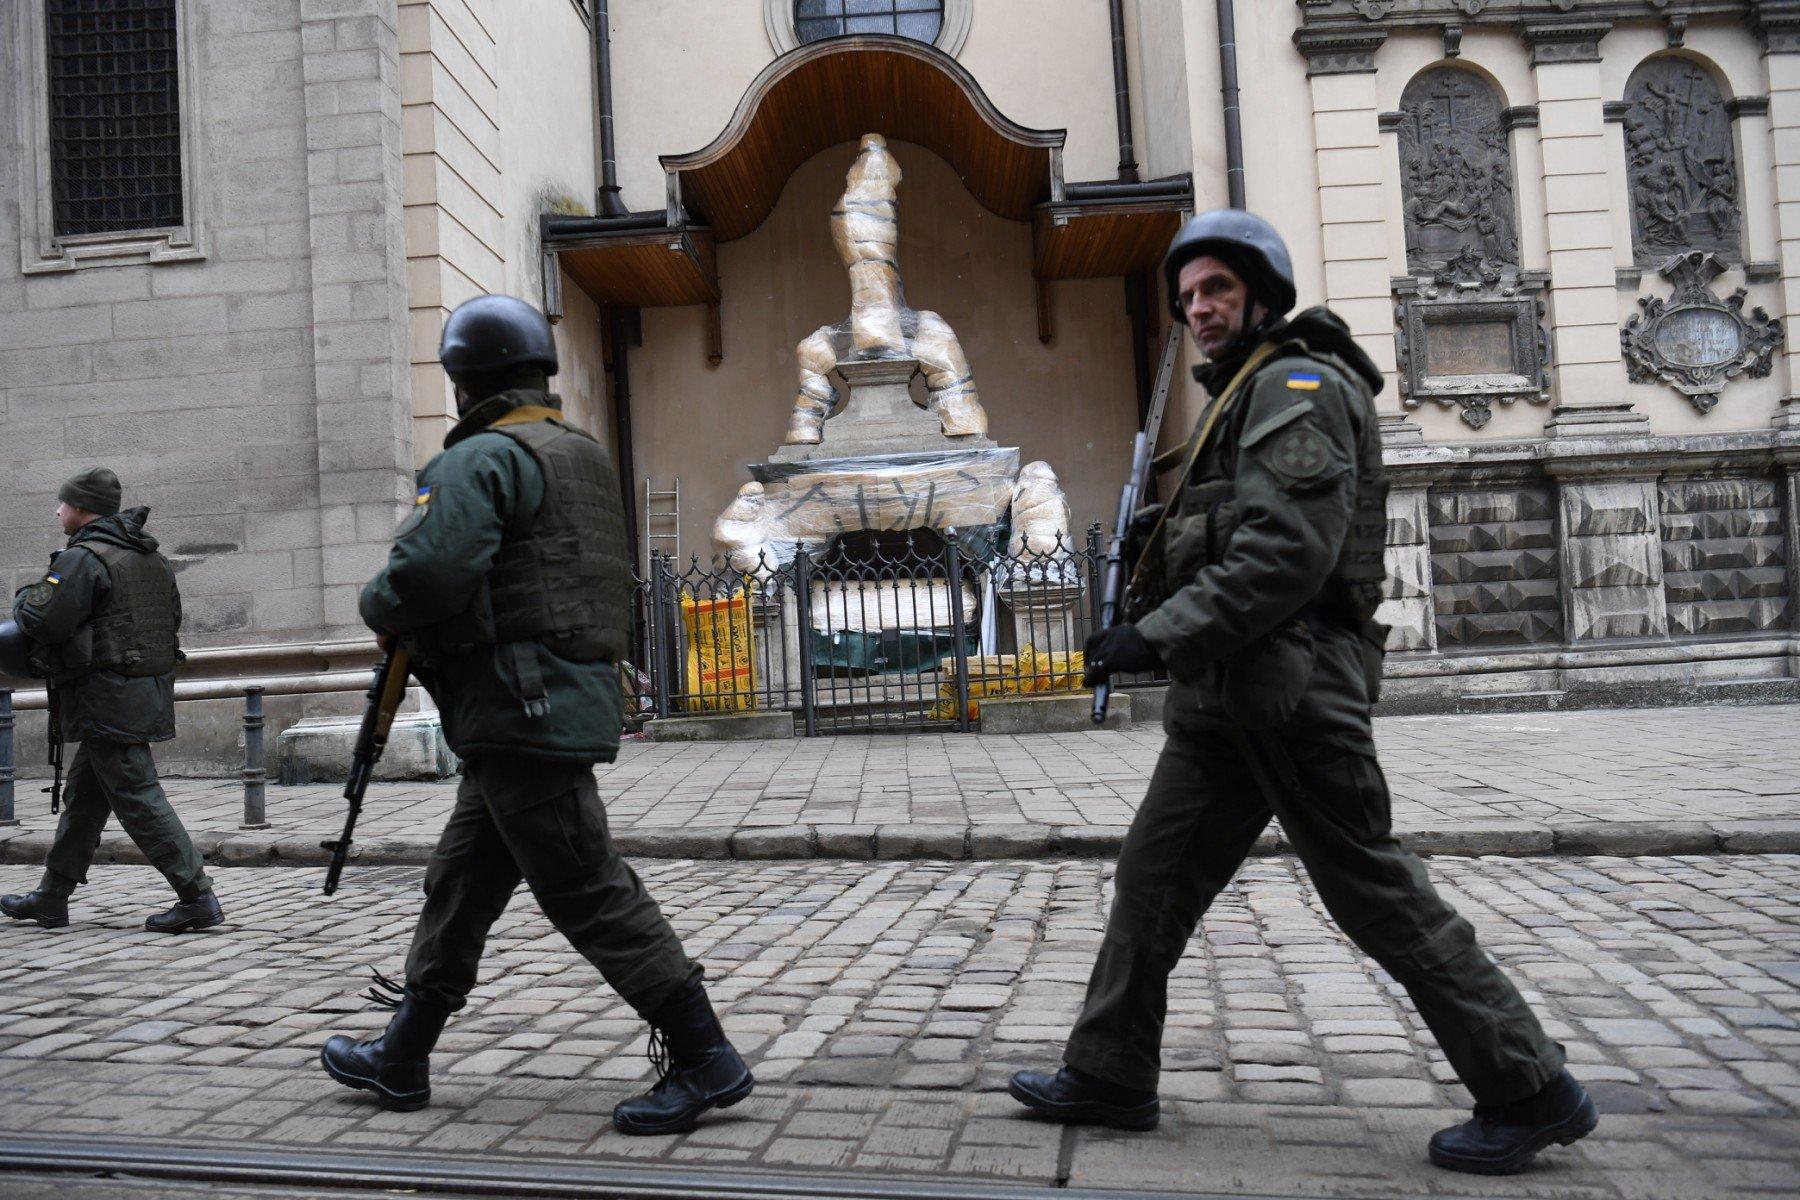 Żołnierze w pełnym uzbrojeniu na ulicy Lwowa przechodząobok statui świętego owiniętą w folię we wnęce kościoła katolickiego